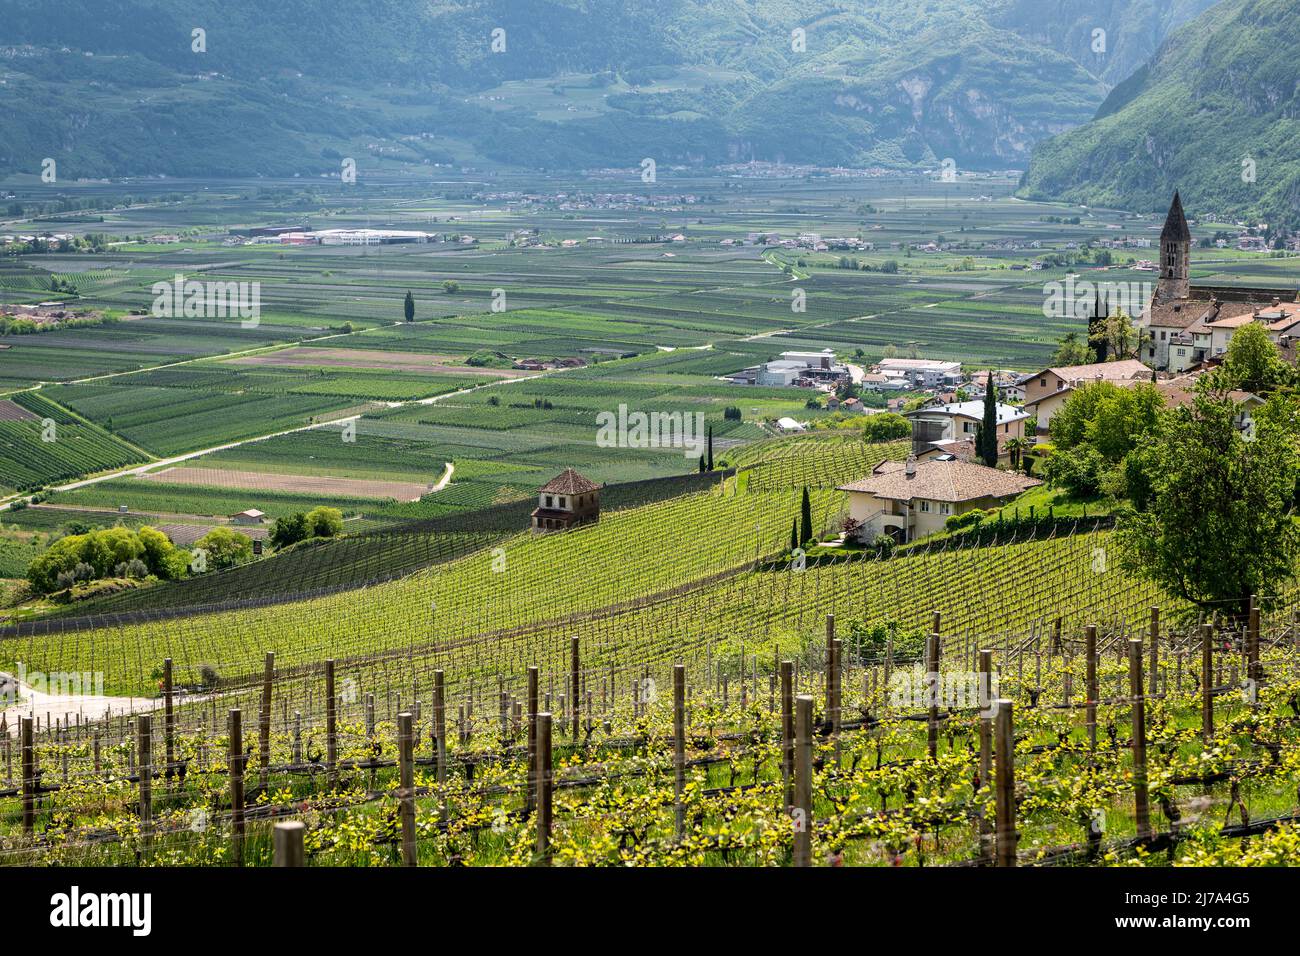 Paesaggio di Cortaccia (Kurtatsch) in Alto Adige, Italia settentrionale: L'idilliaco villaggio del vino si trova su un altopiano soleggiato a 333 m s.l.m. Foto Stock